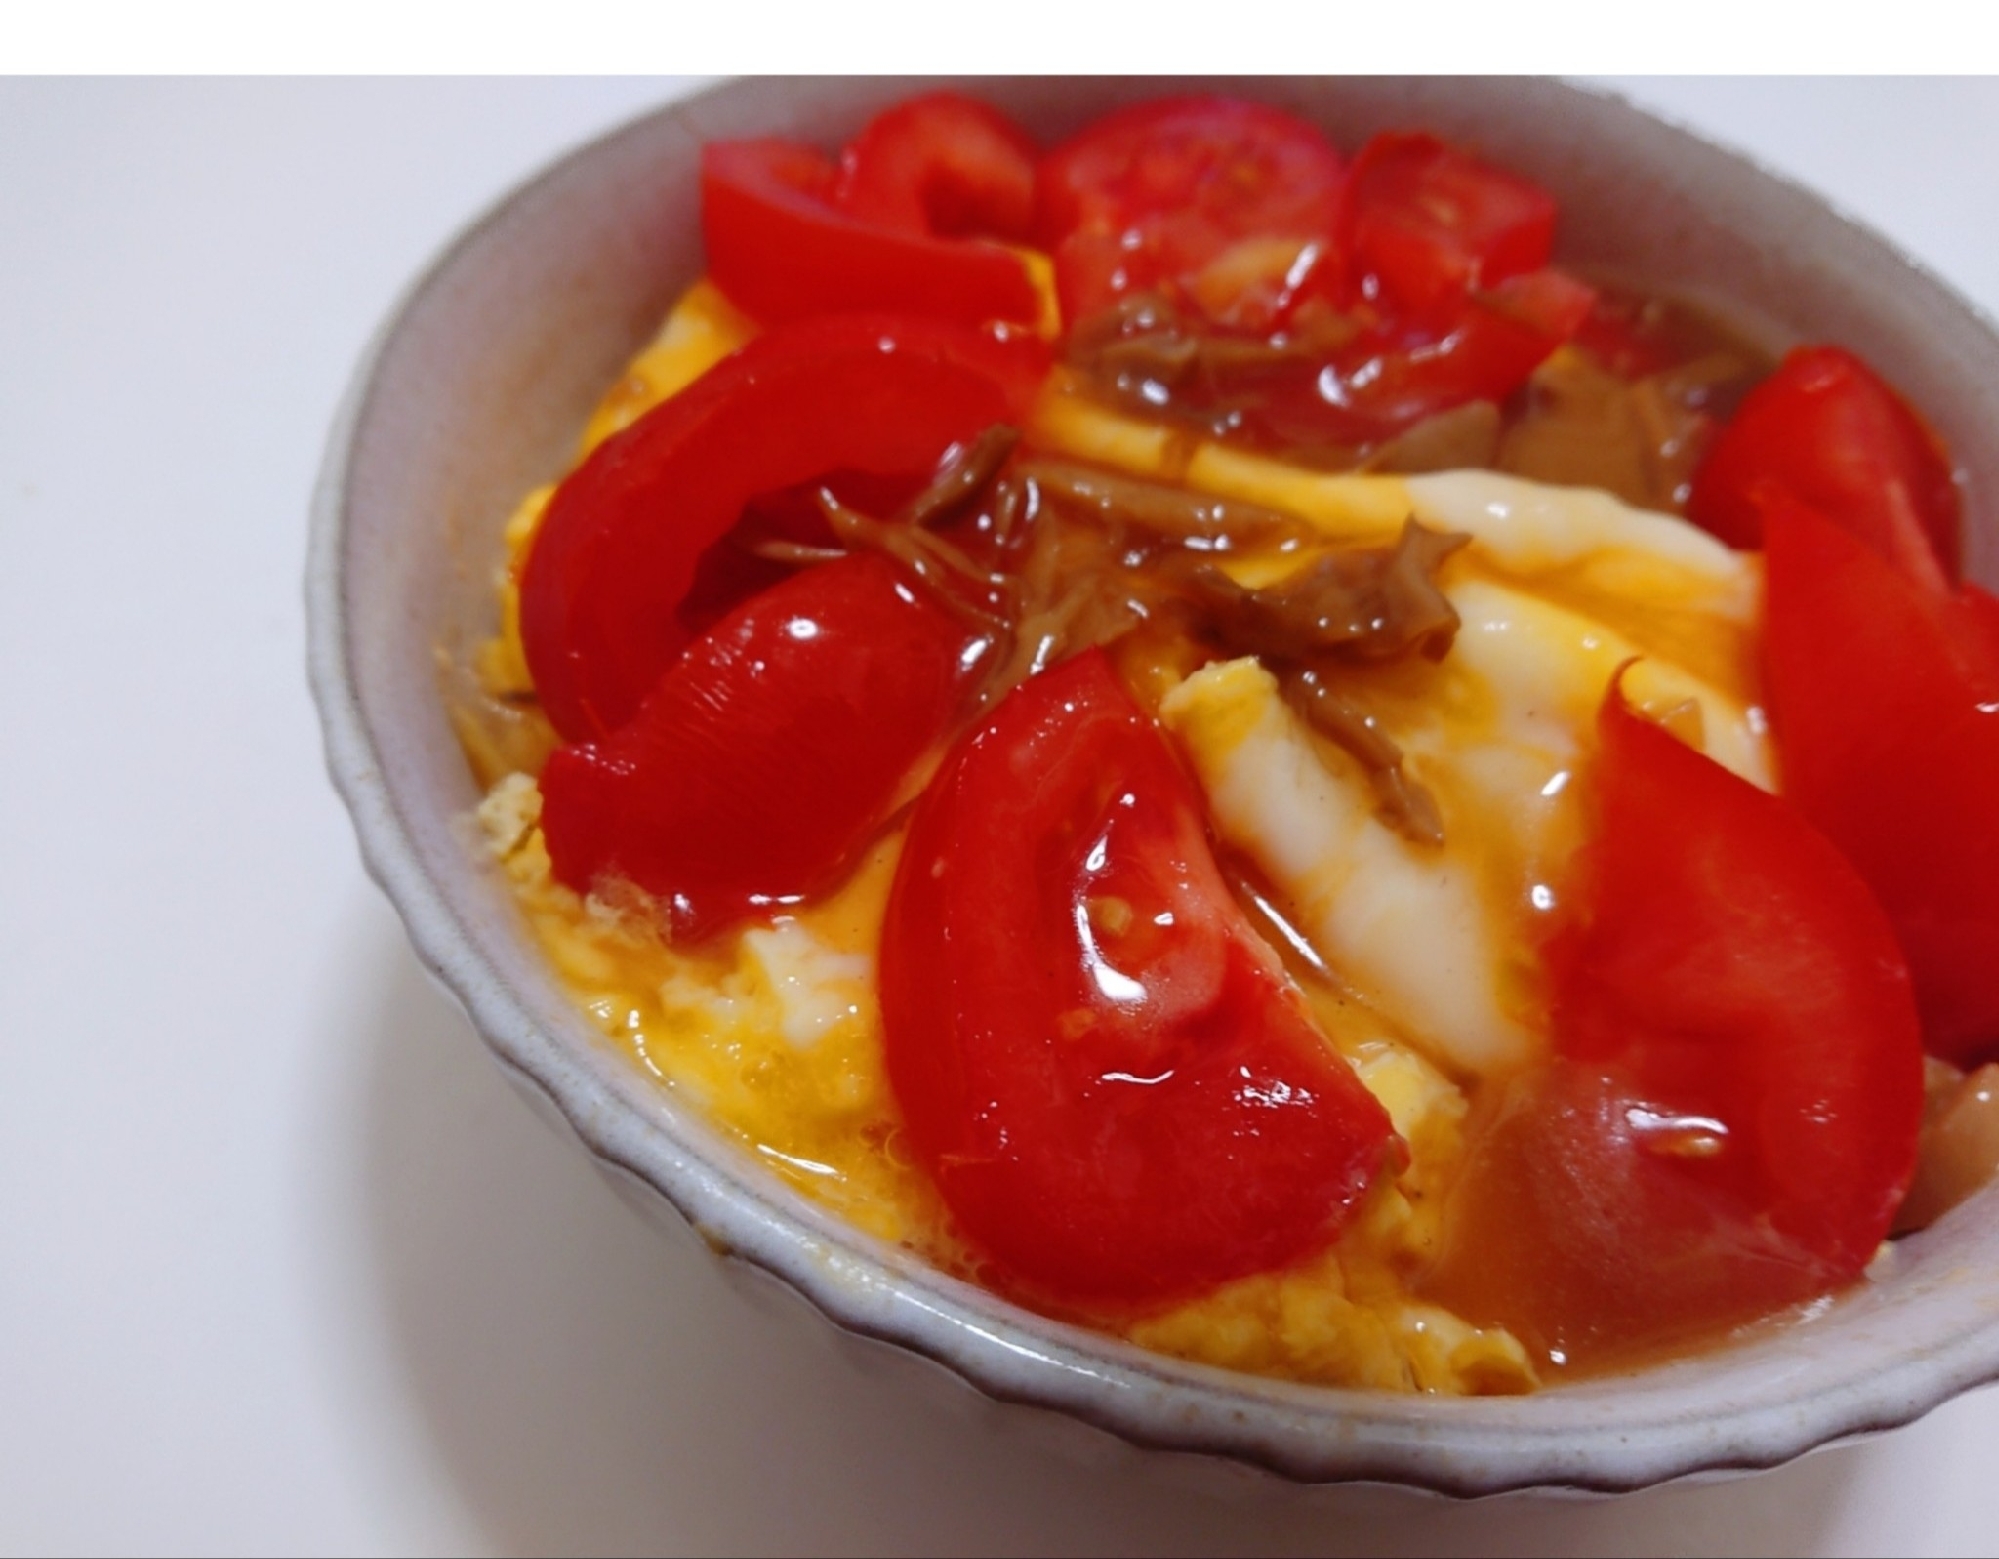 パスタソースで簡単、なんちゃってトマト天津飯